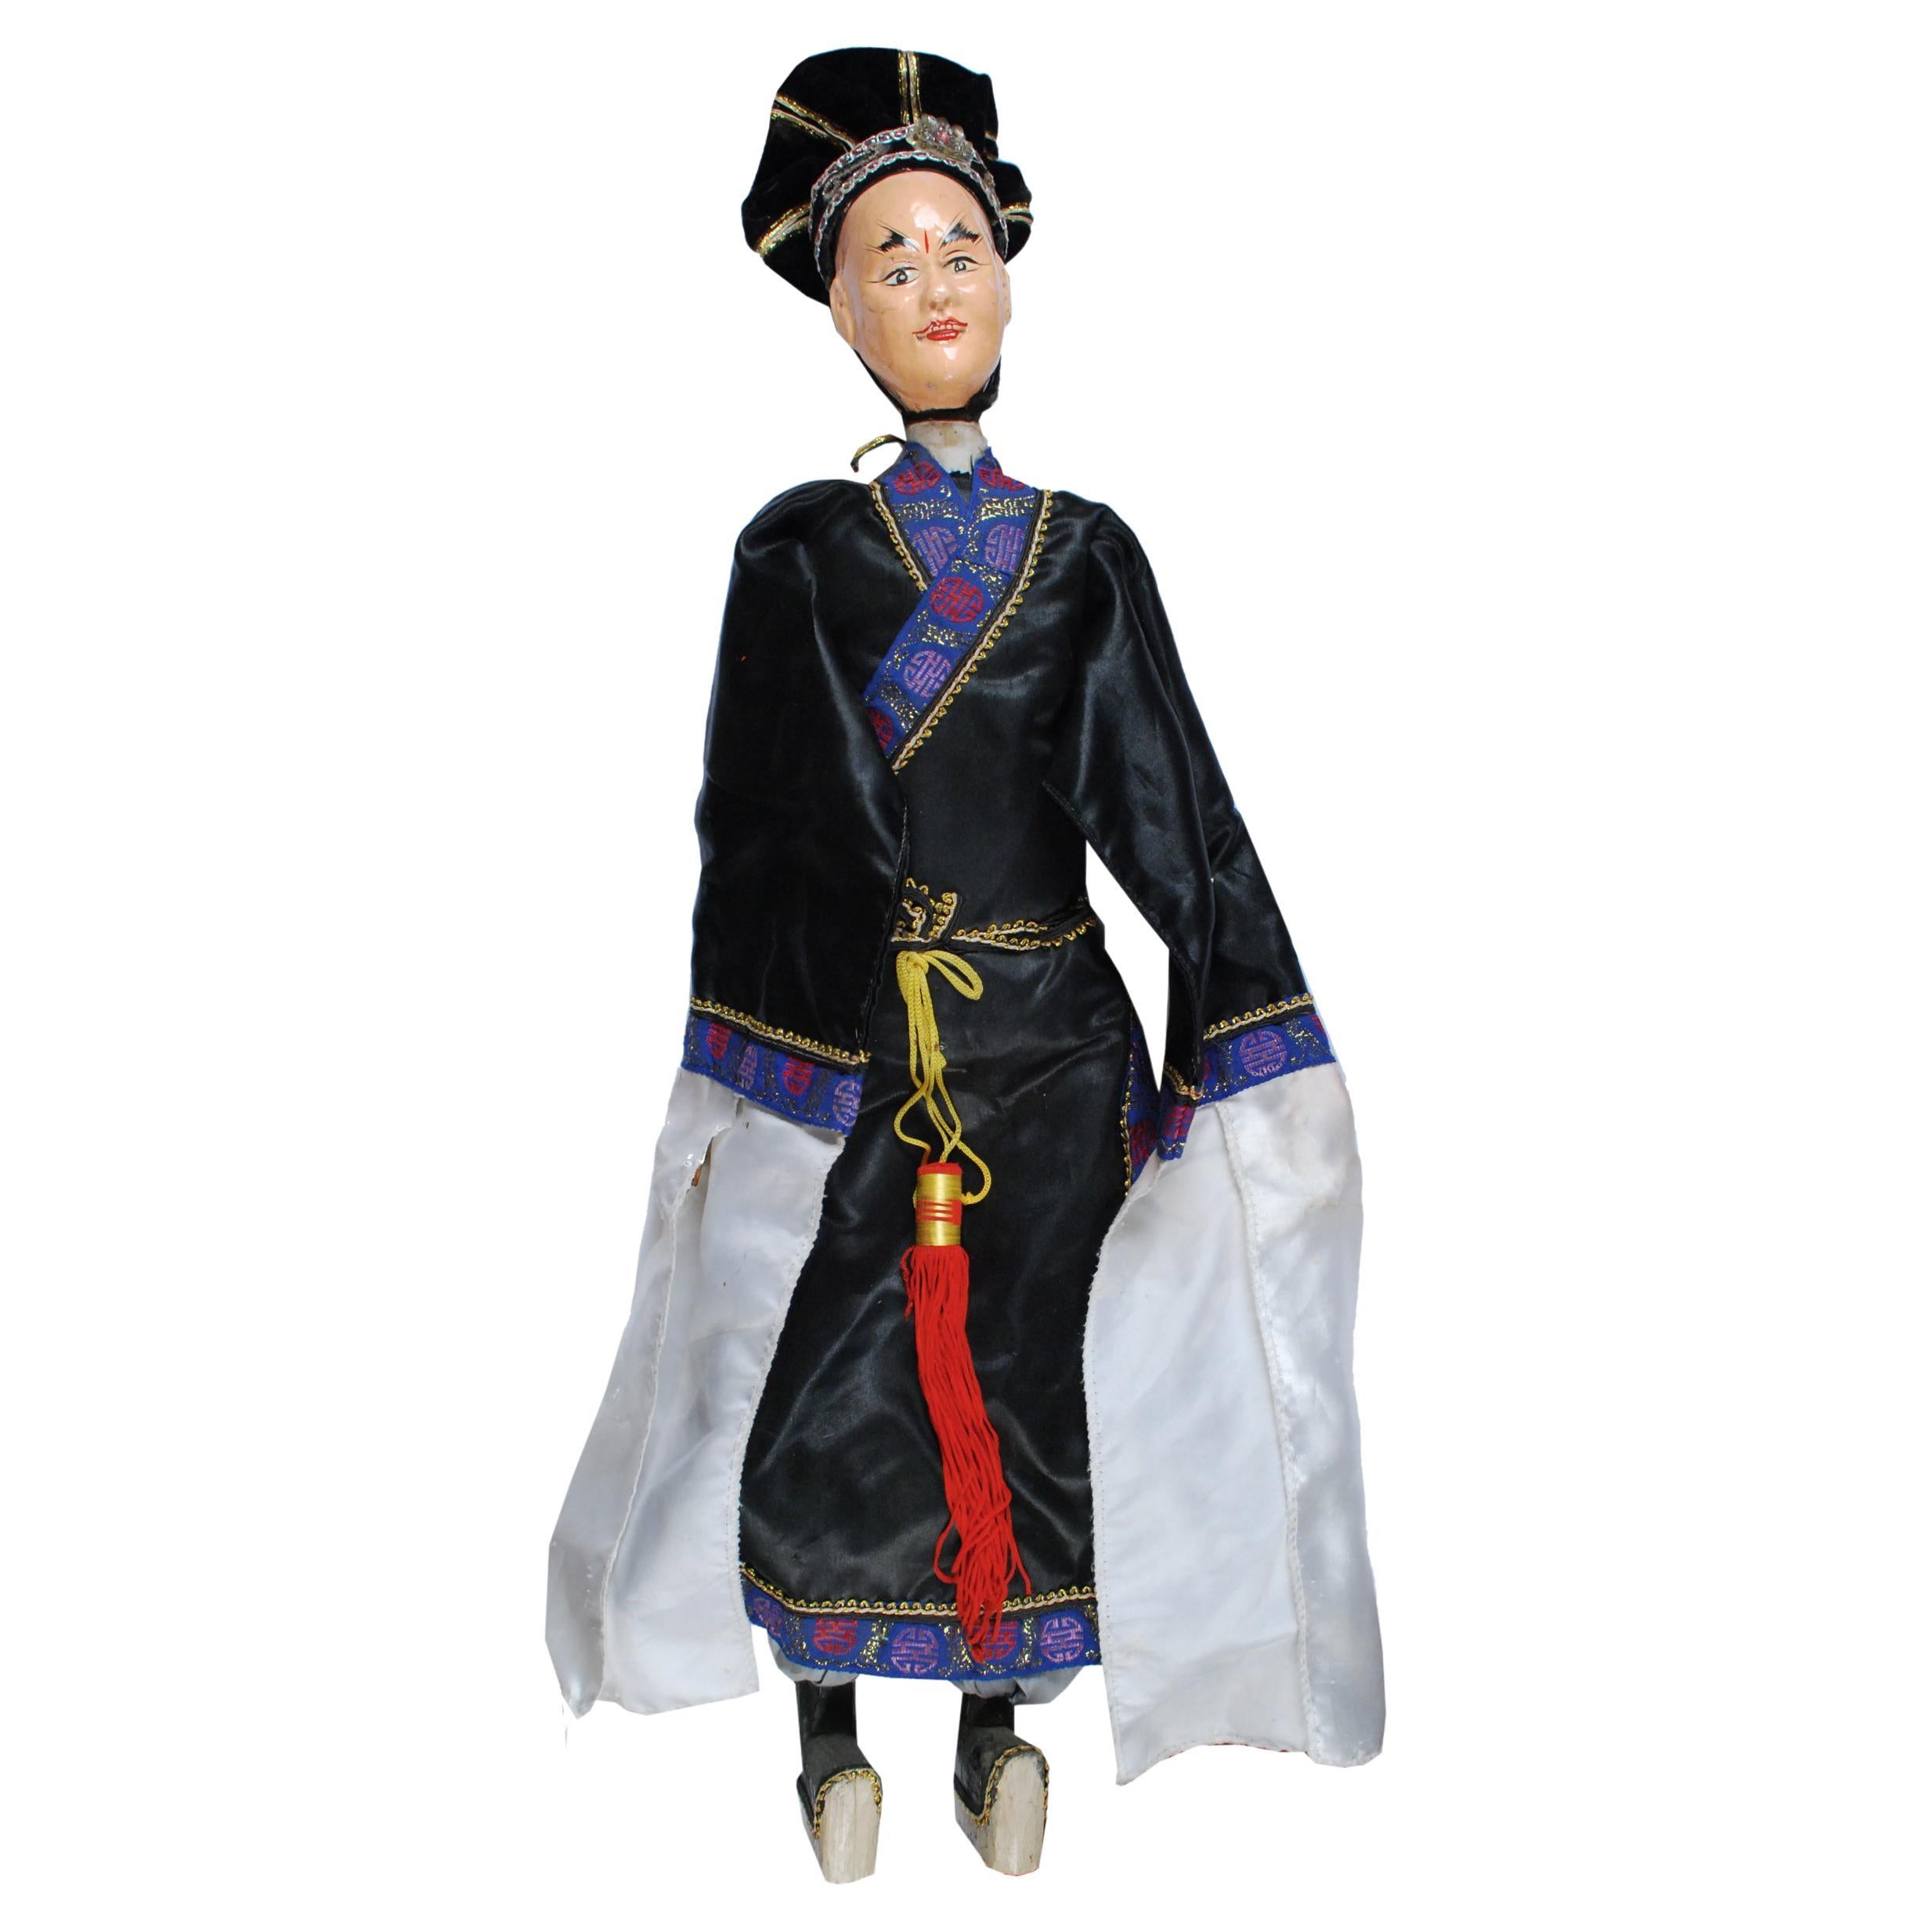 Chinese Opera Puppet, c. 1900